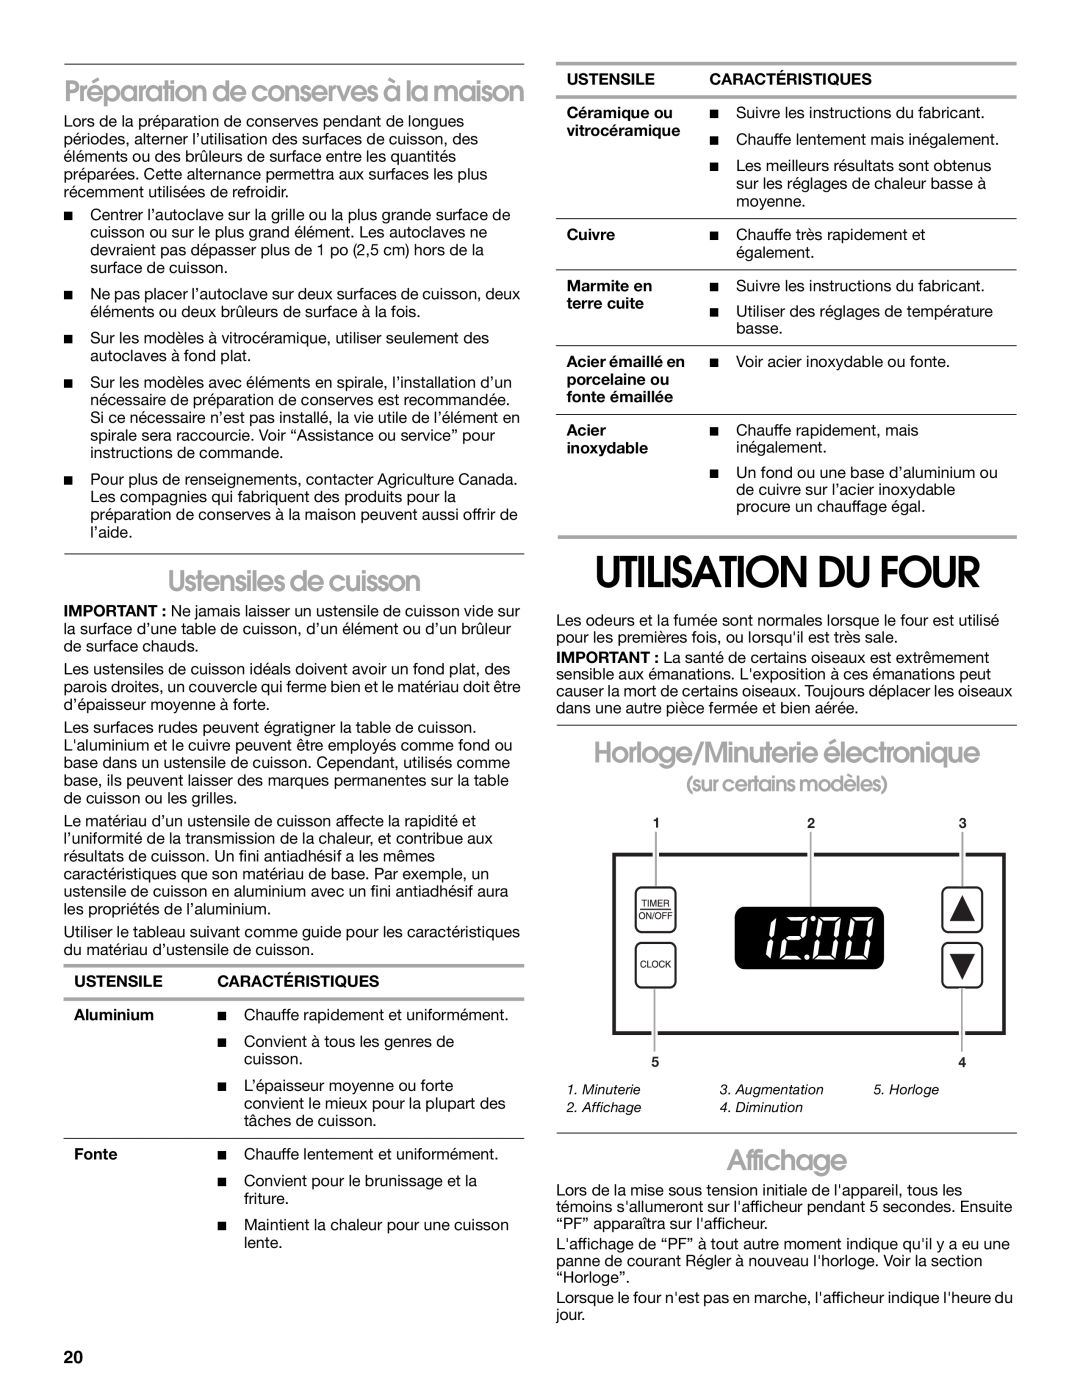 Whirlpool RME30000 manual Utilisation Du Four, Préparation de conserves à la maison, Ustensiles de cuisson, Affichage 